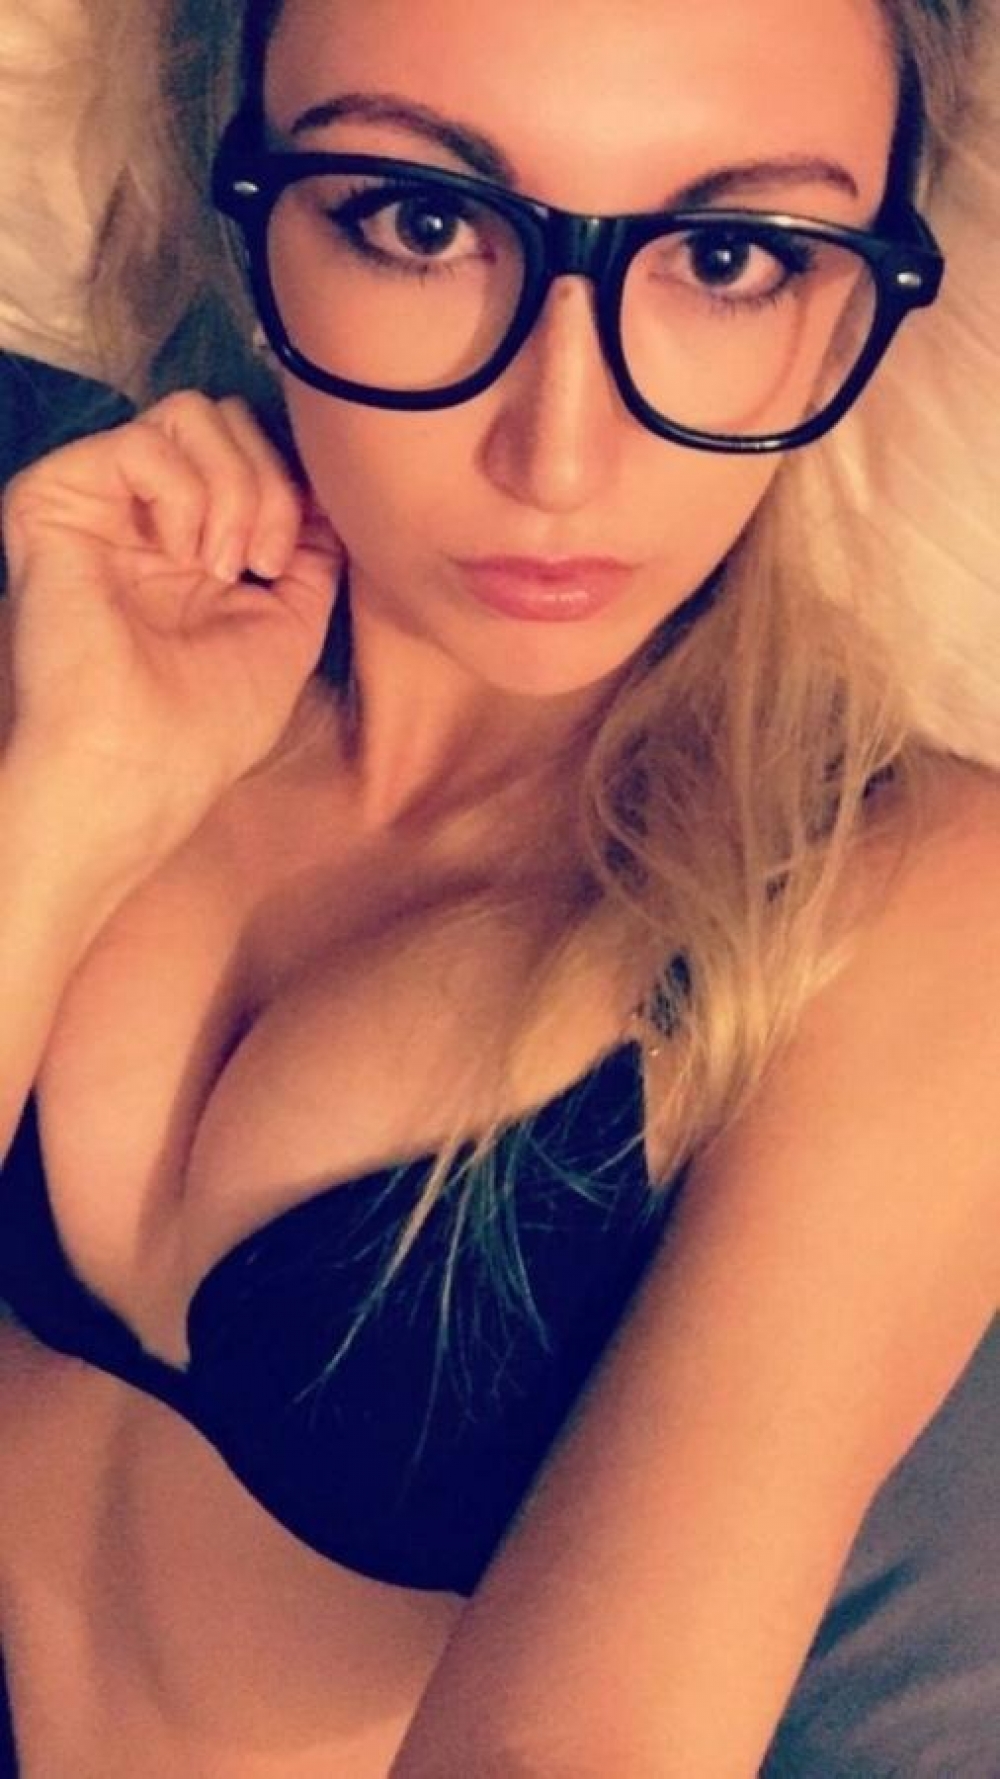 blonde bra cleavage selfie porn photo